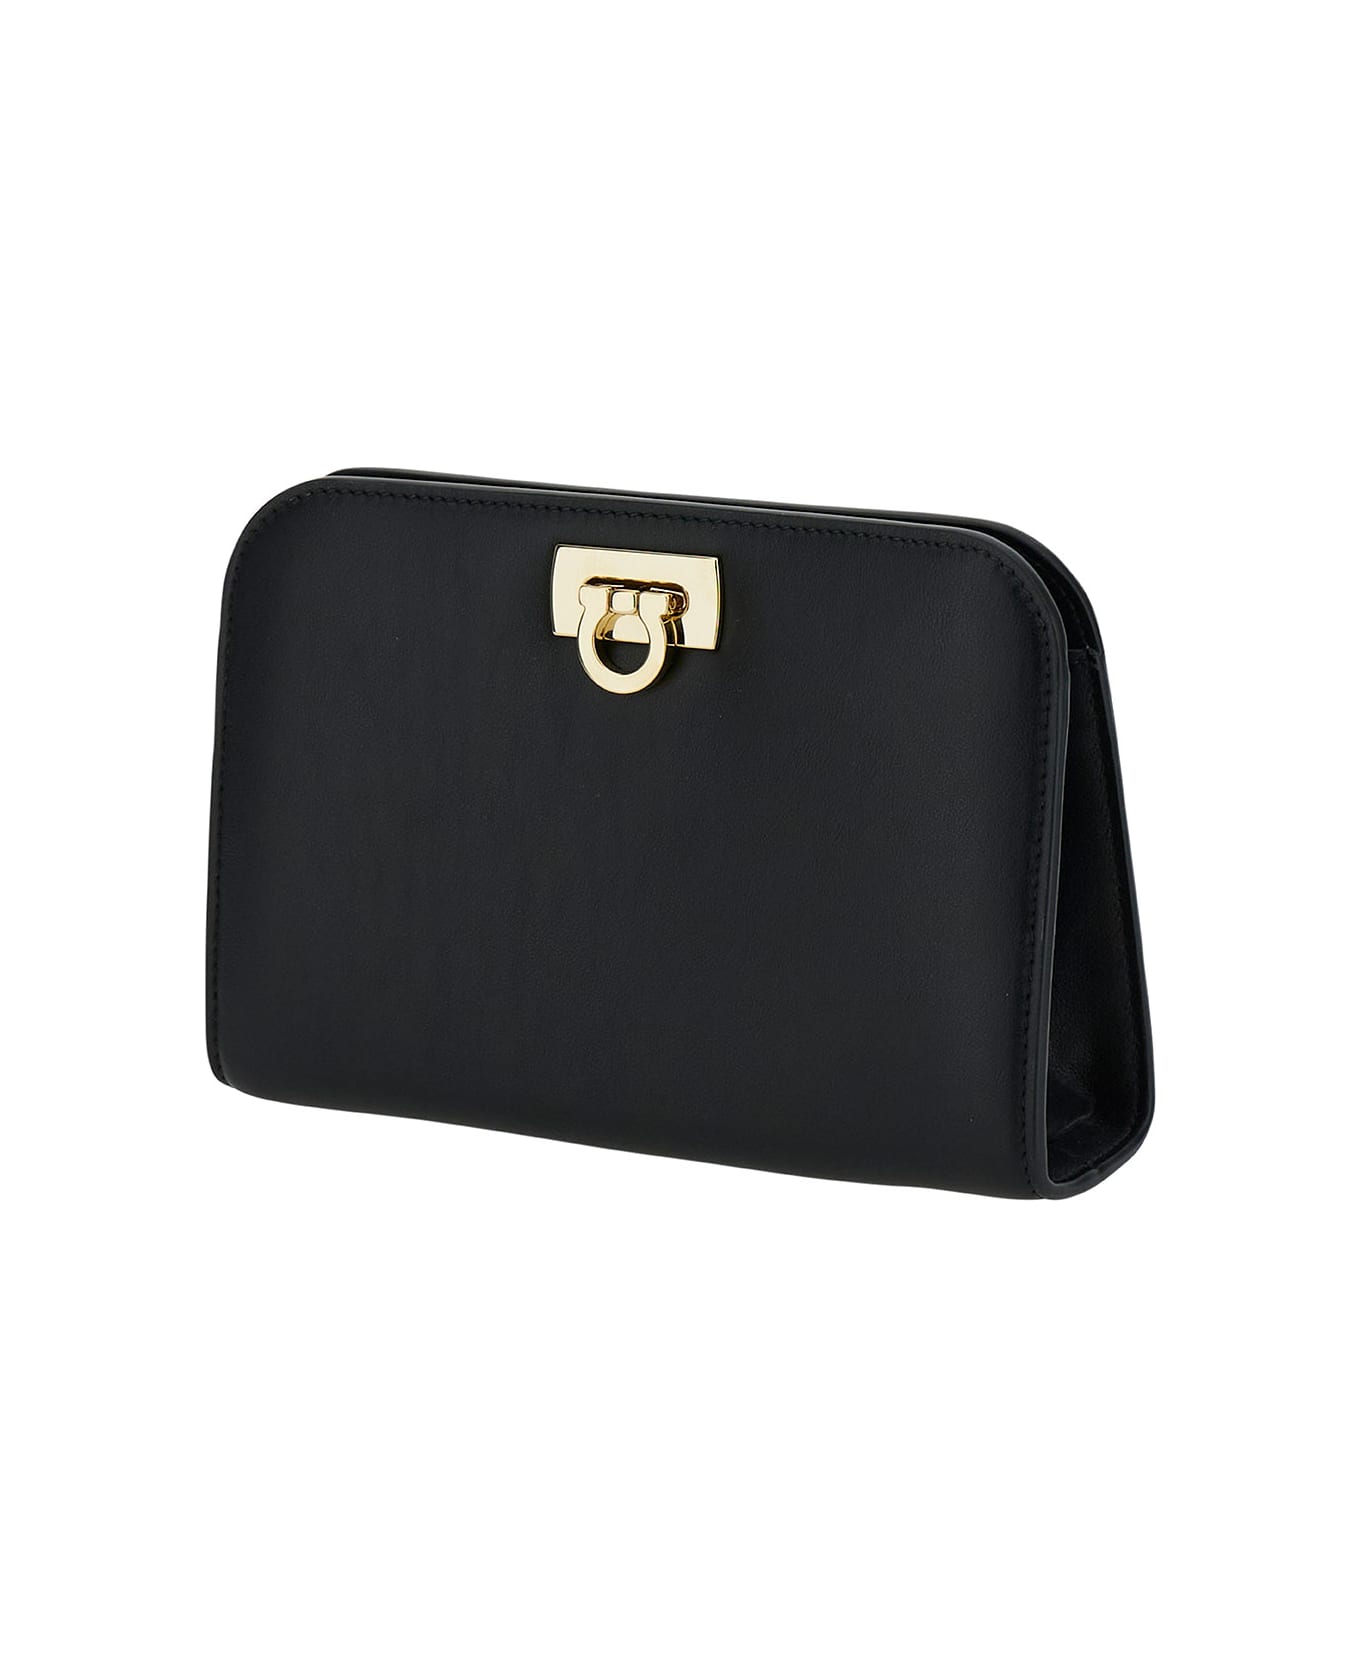 Ferragamo 'diana' Mini Clutch Bag In Black Calf Leather - Black ショルダーバッグ